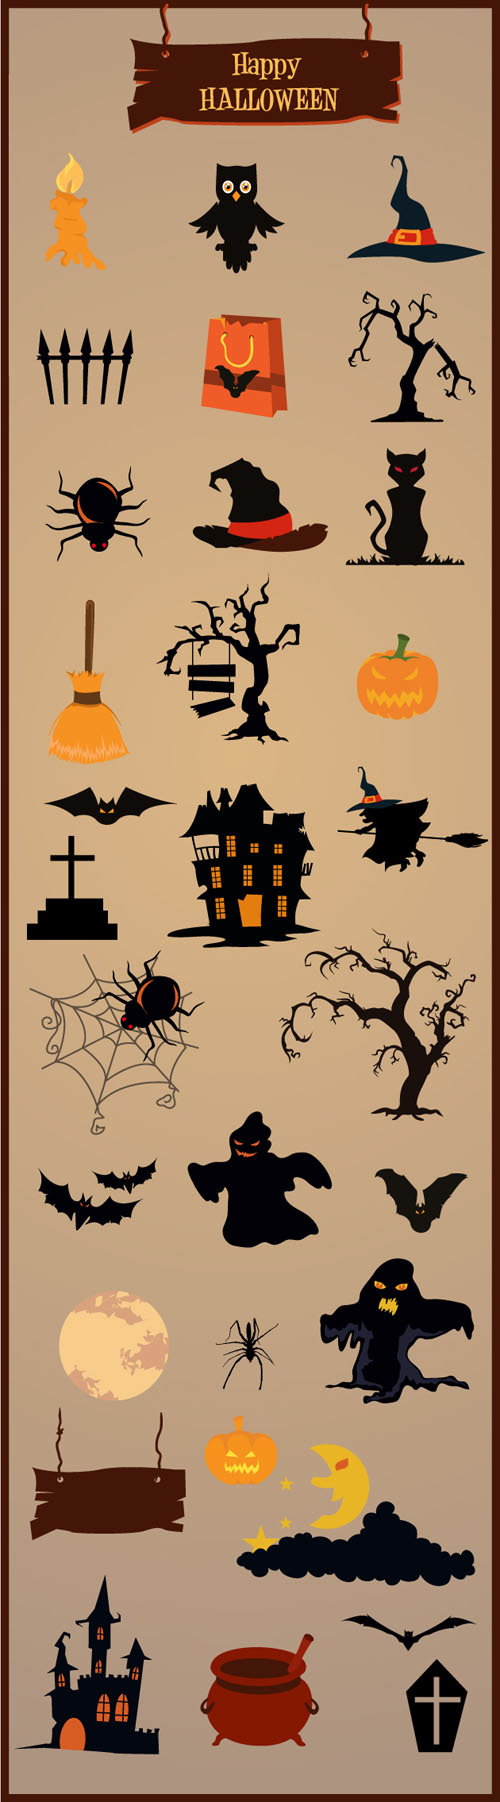 Designtnt - Halloween Vector Elements set 1